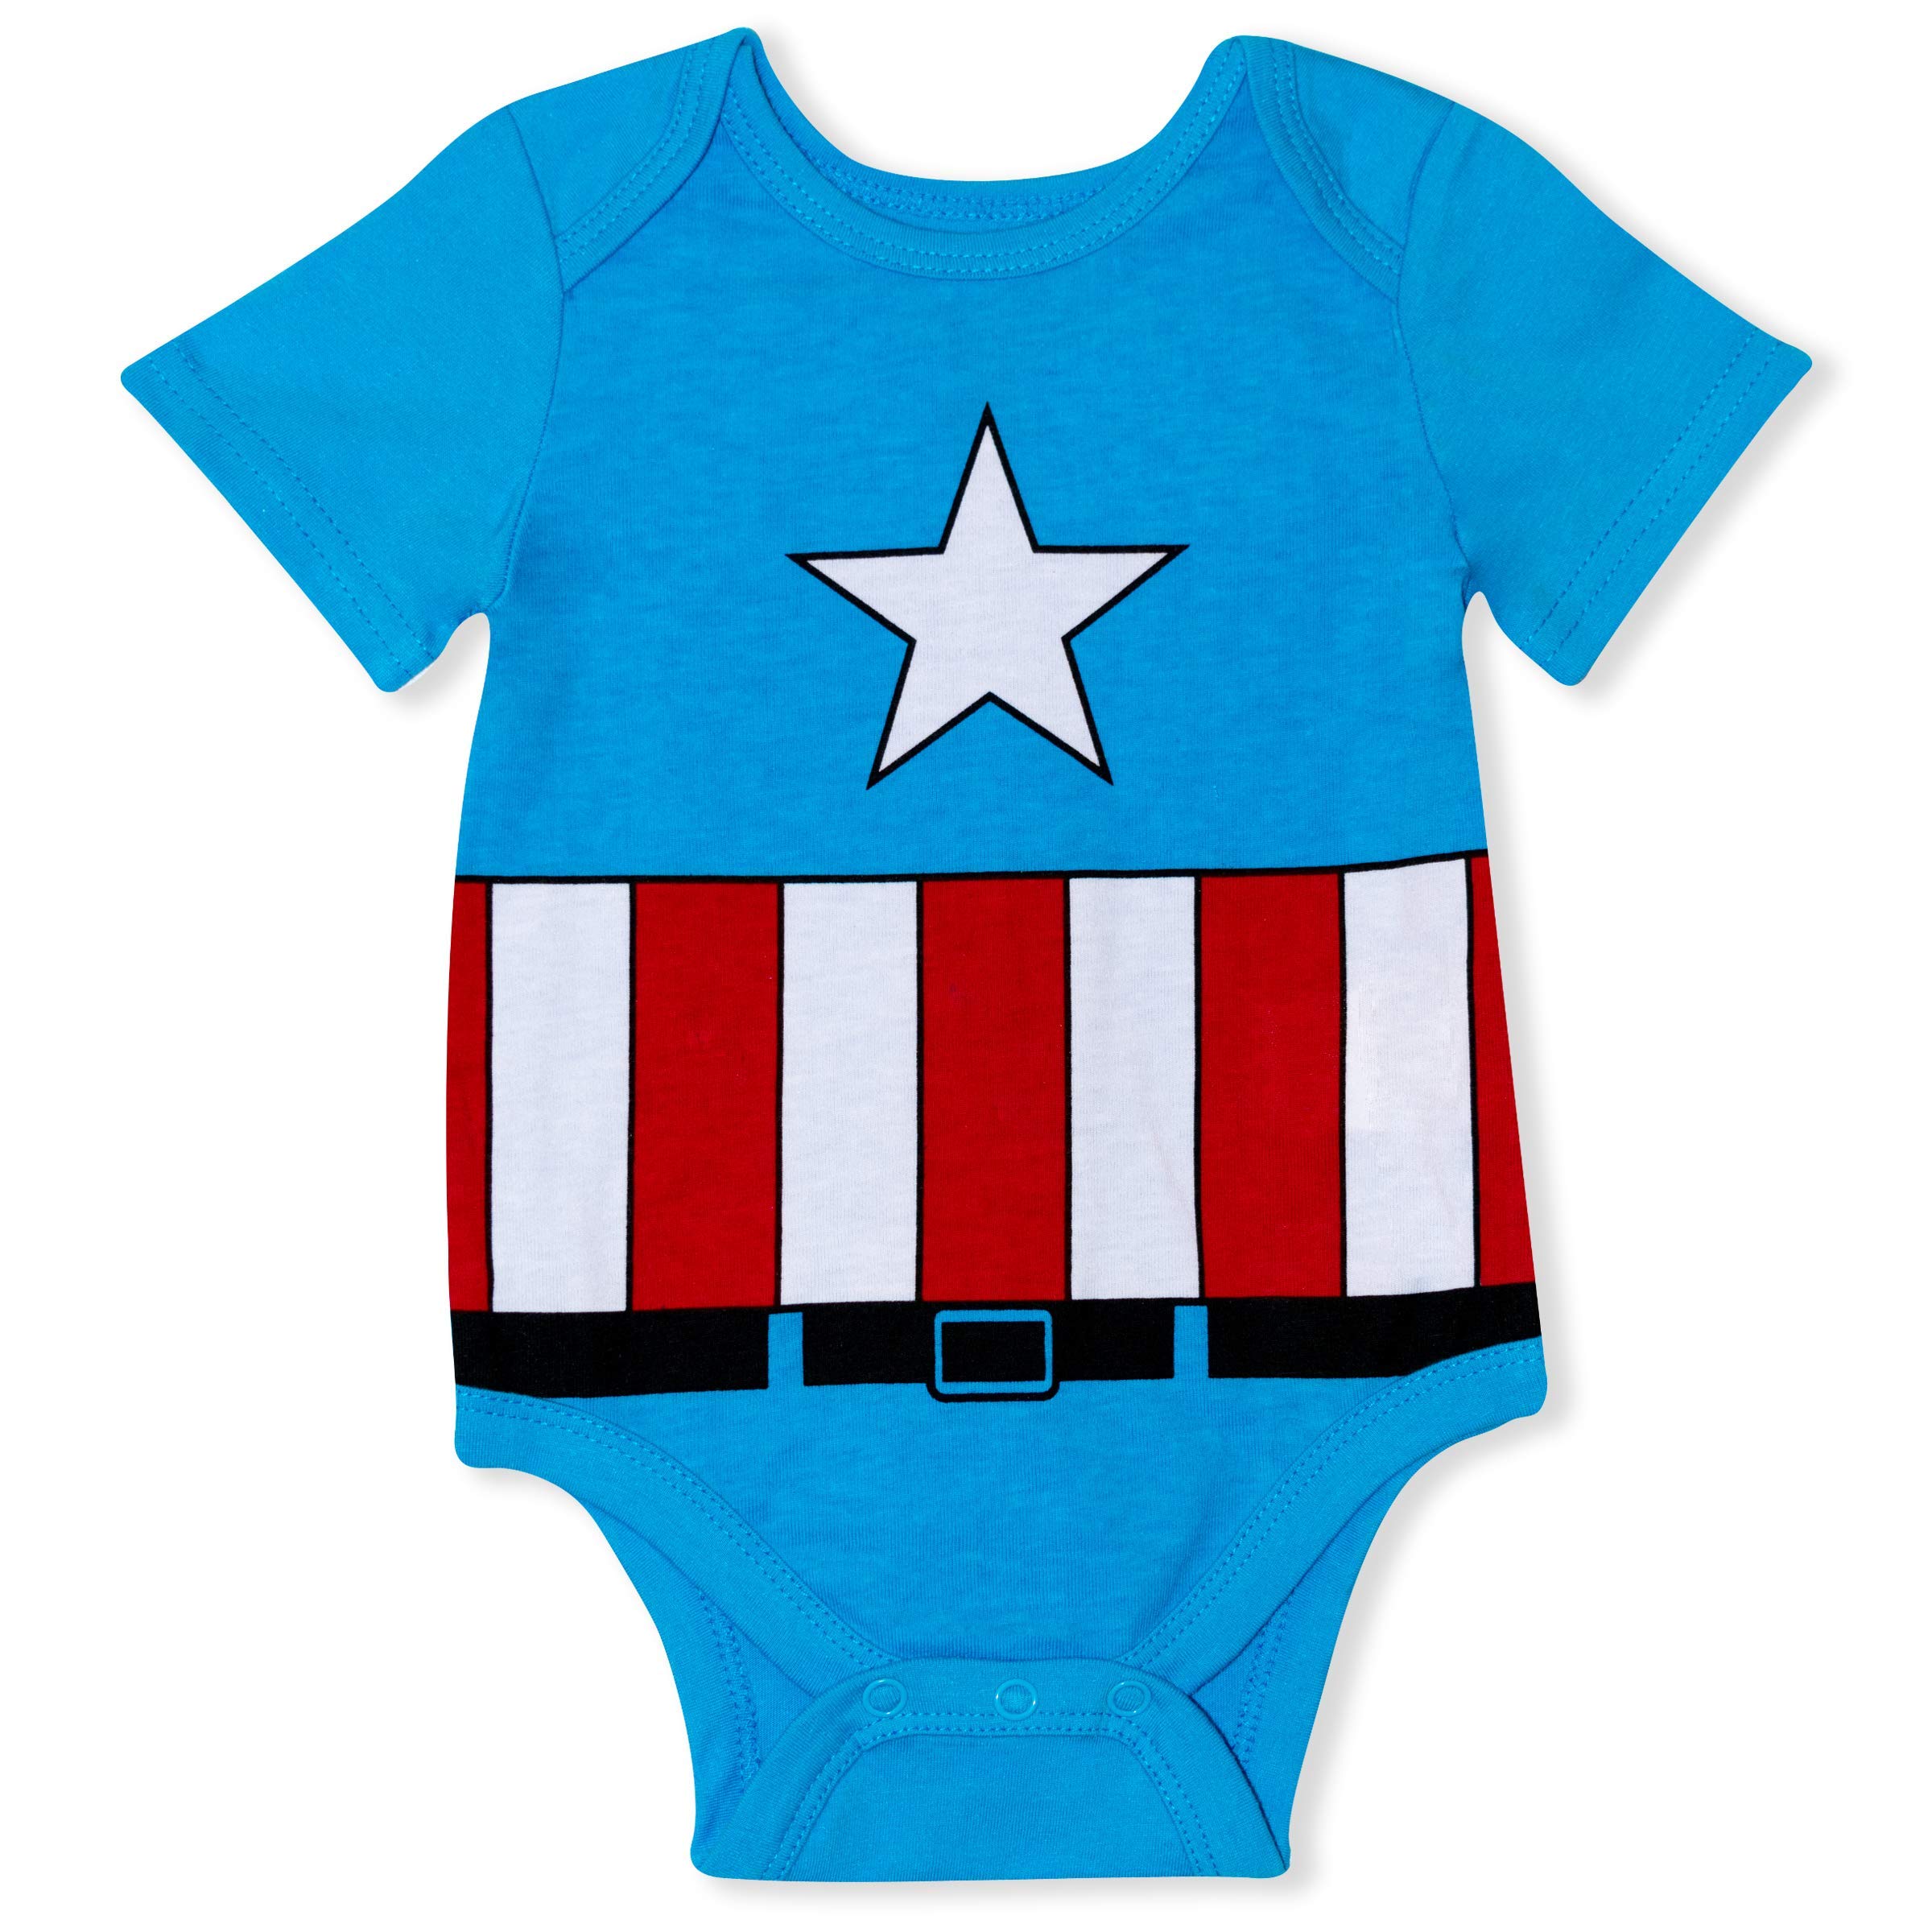 Marvel Avengers Boys Bodysuit 5 Pack for Newborn and Infant – Blue/Red/Black/Green